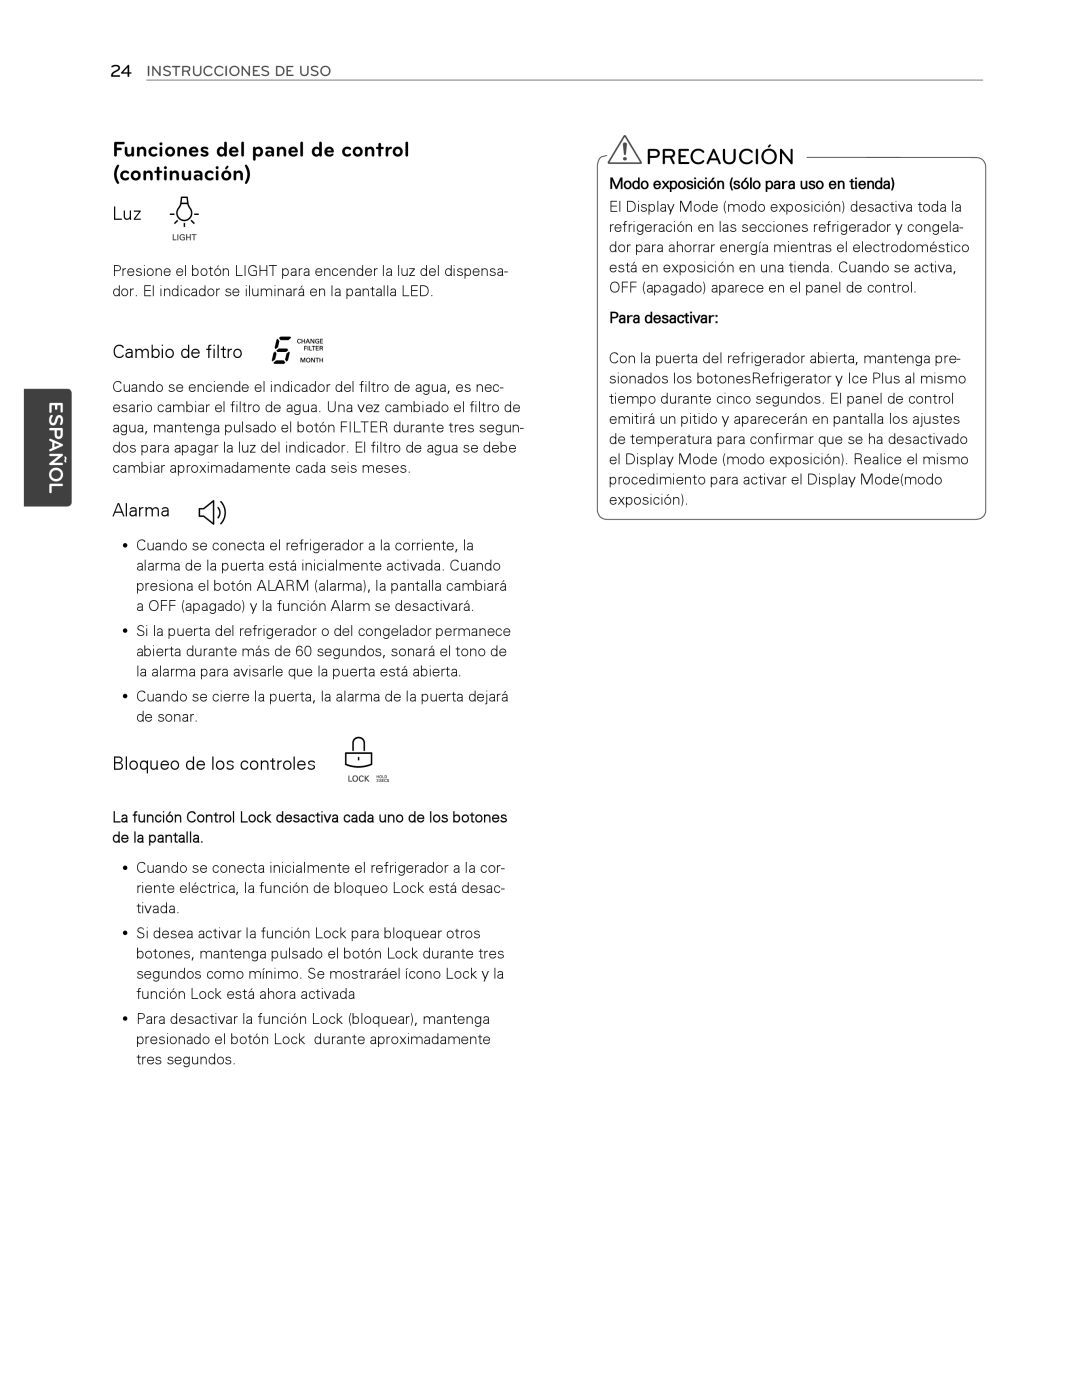 LG Electronics LFX25974SB Precaución, Funciones del panel de control continuación, Español, Cambio de filtro, Alarma 